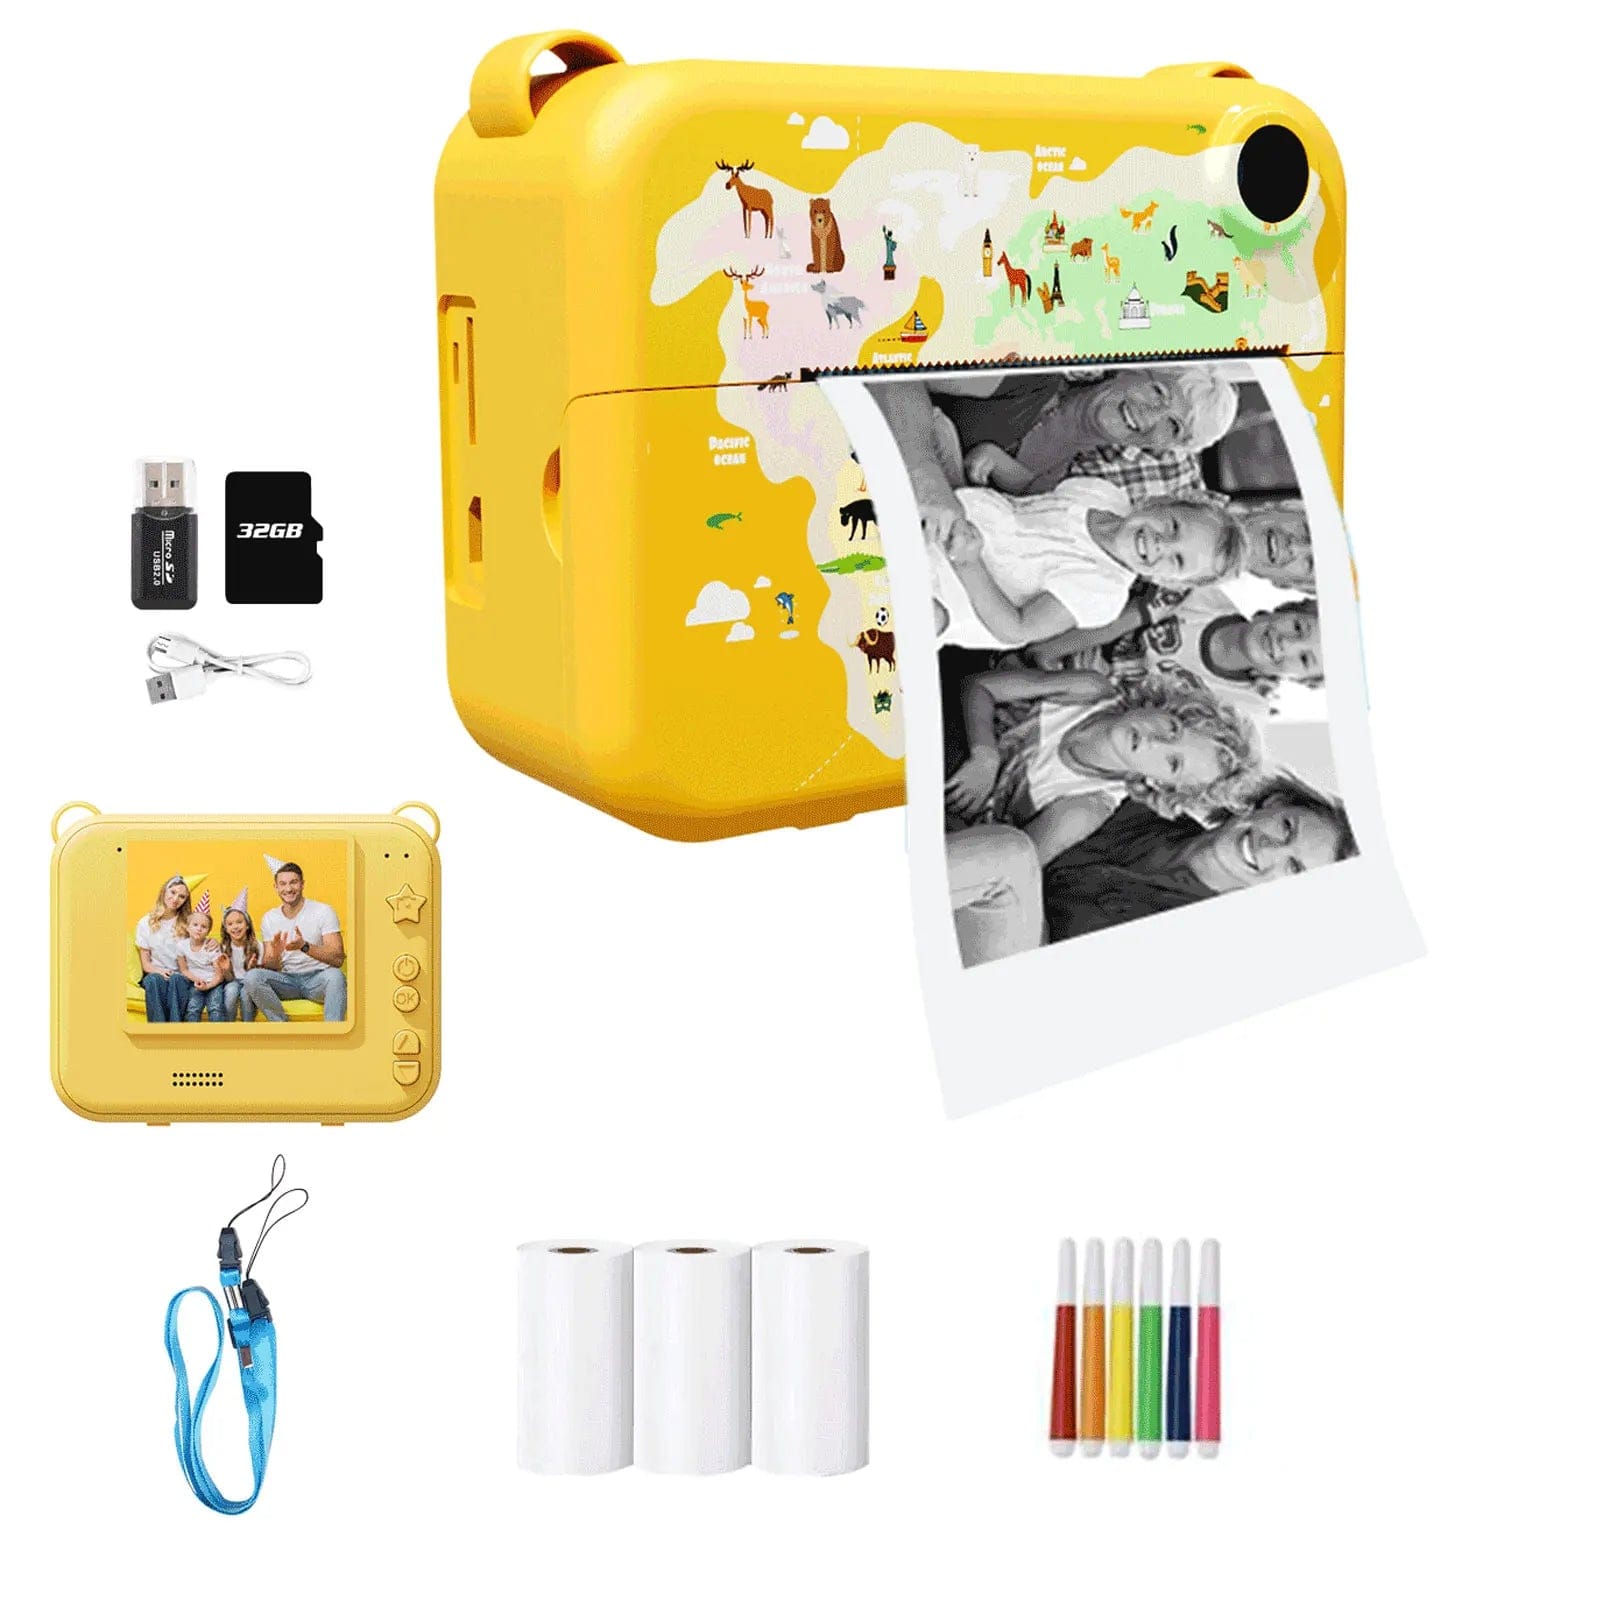 HomeBound Essentials SnapFun Instant Print Kids Camera